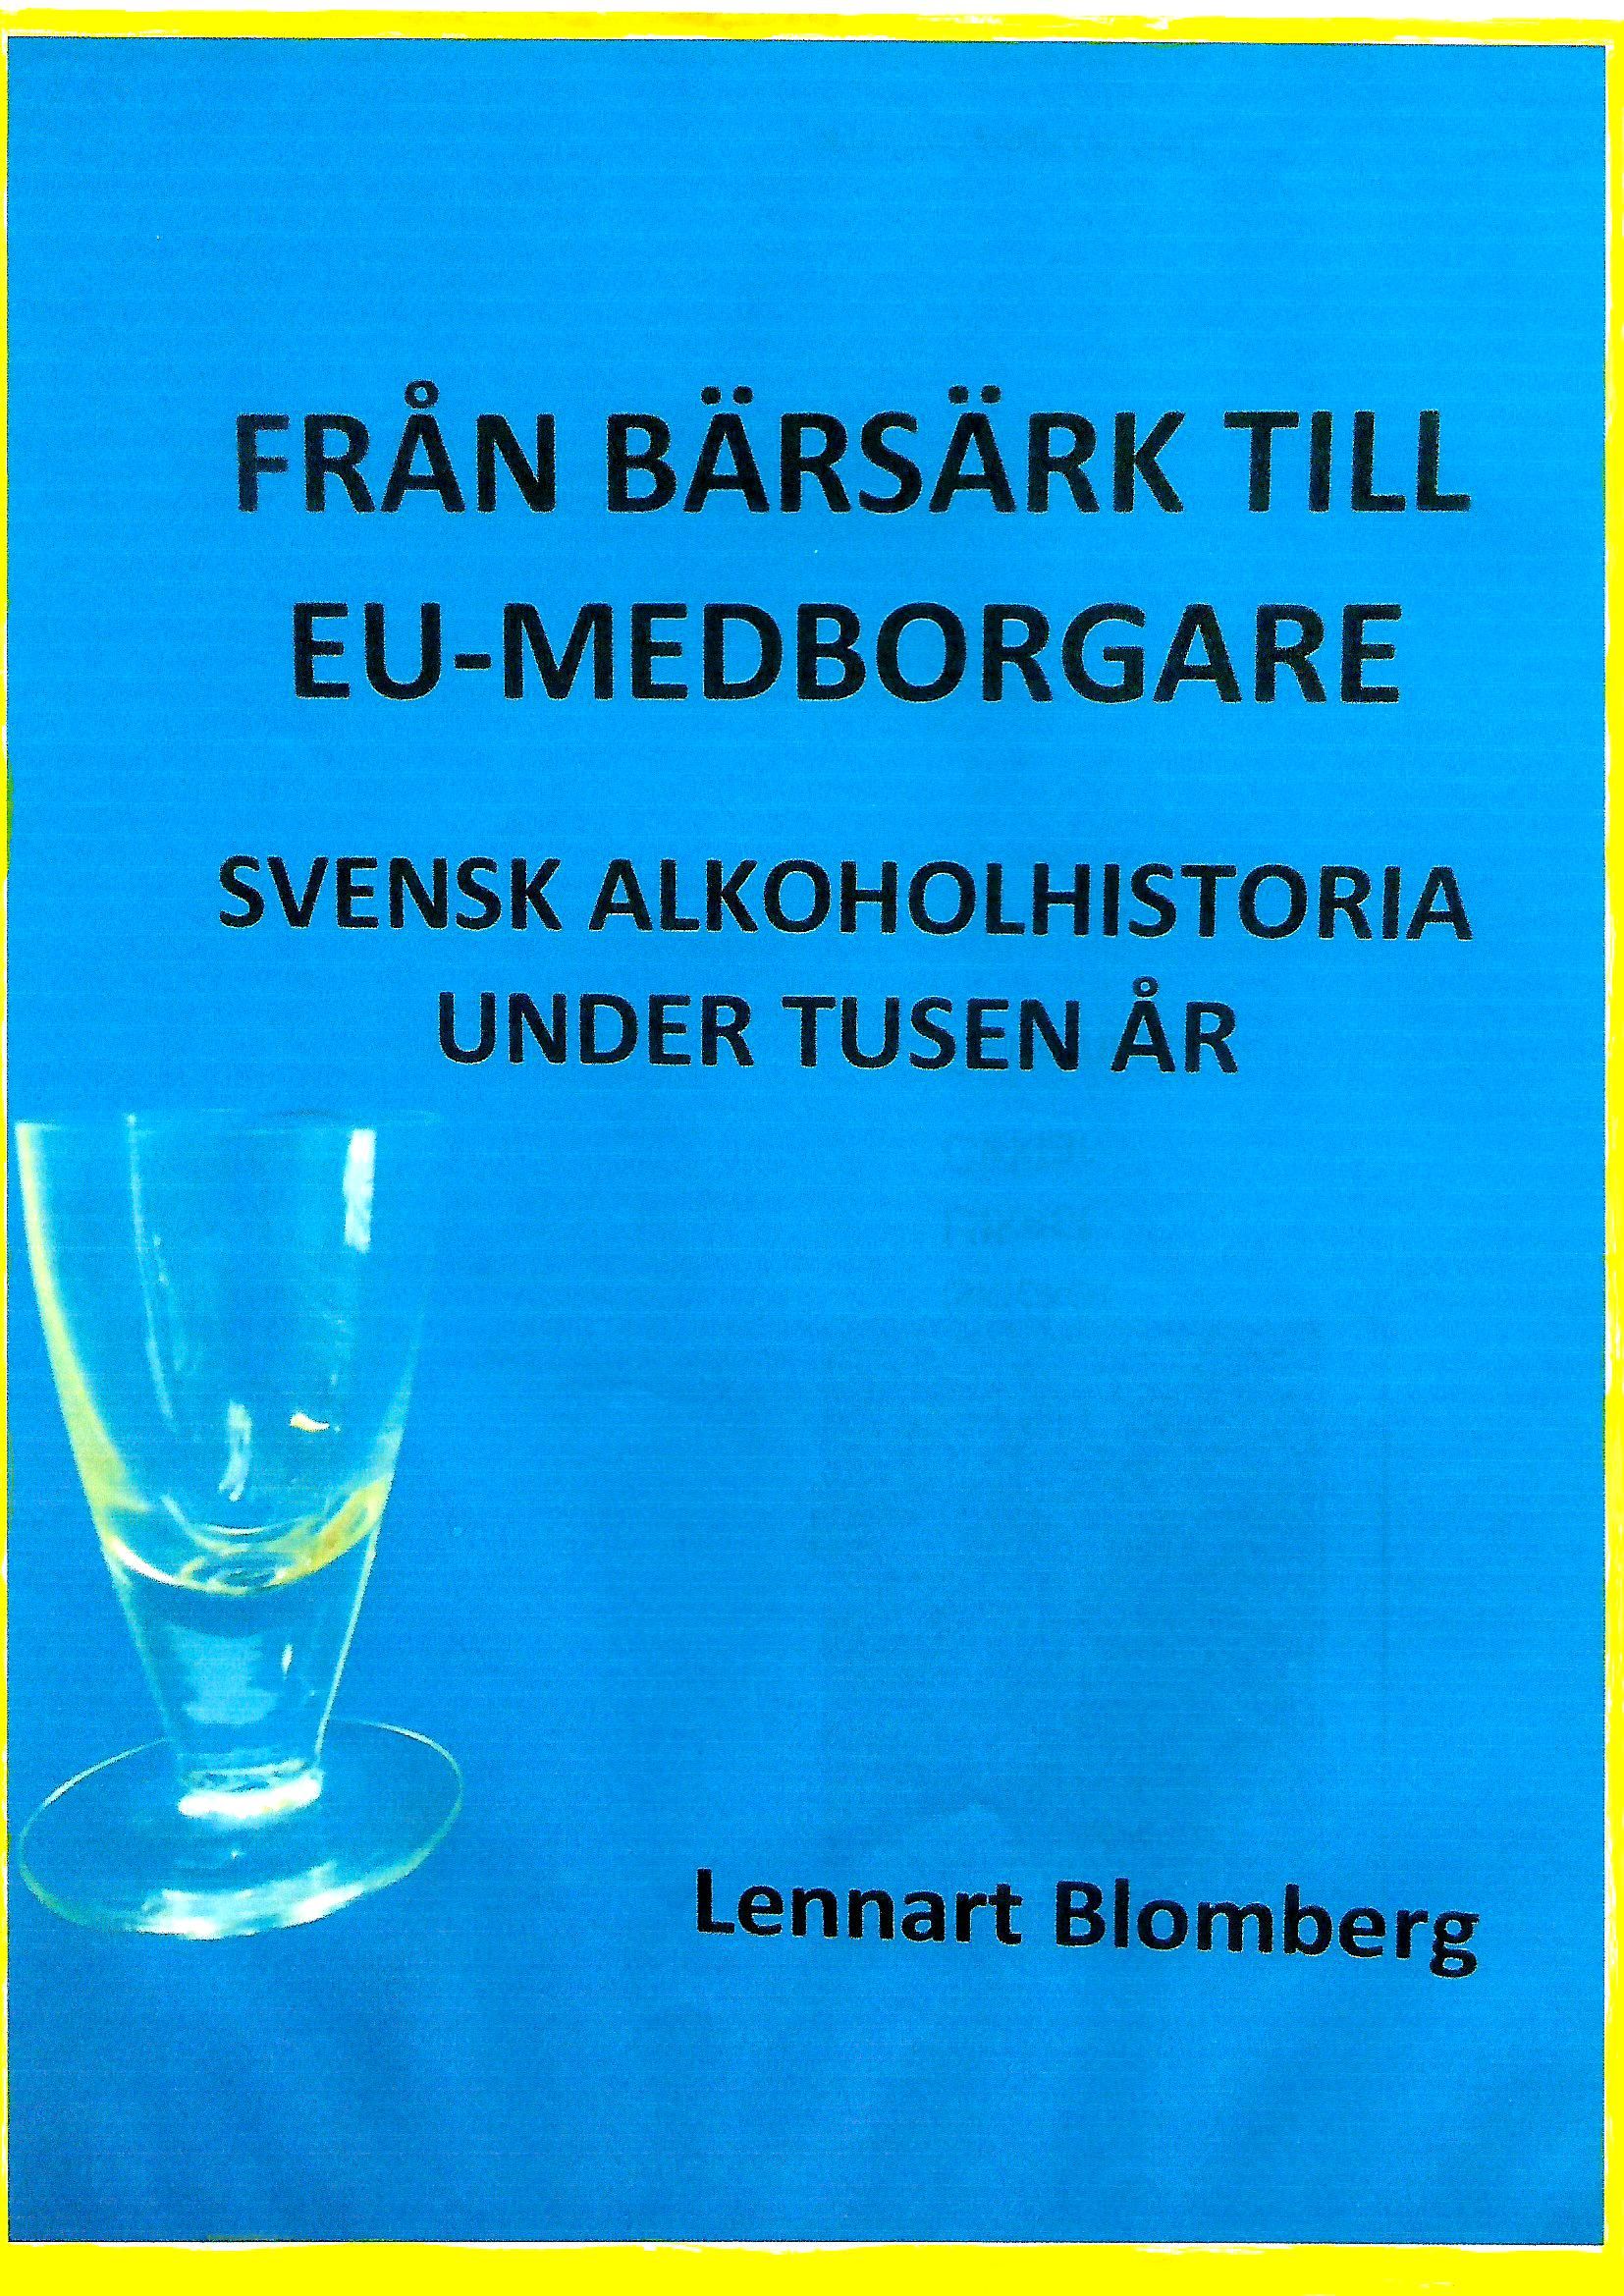 Från bärsärk till EU-medborgare, eBook by Lennart Blomberg